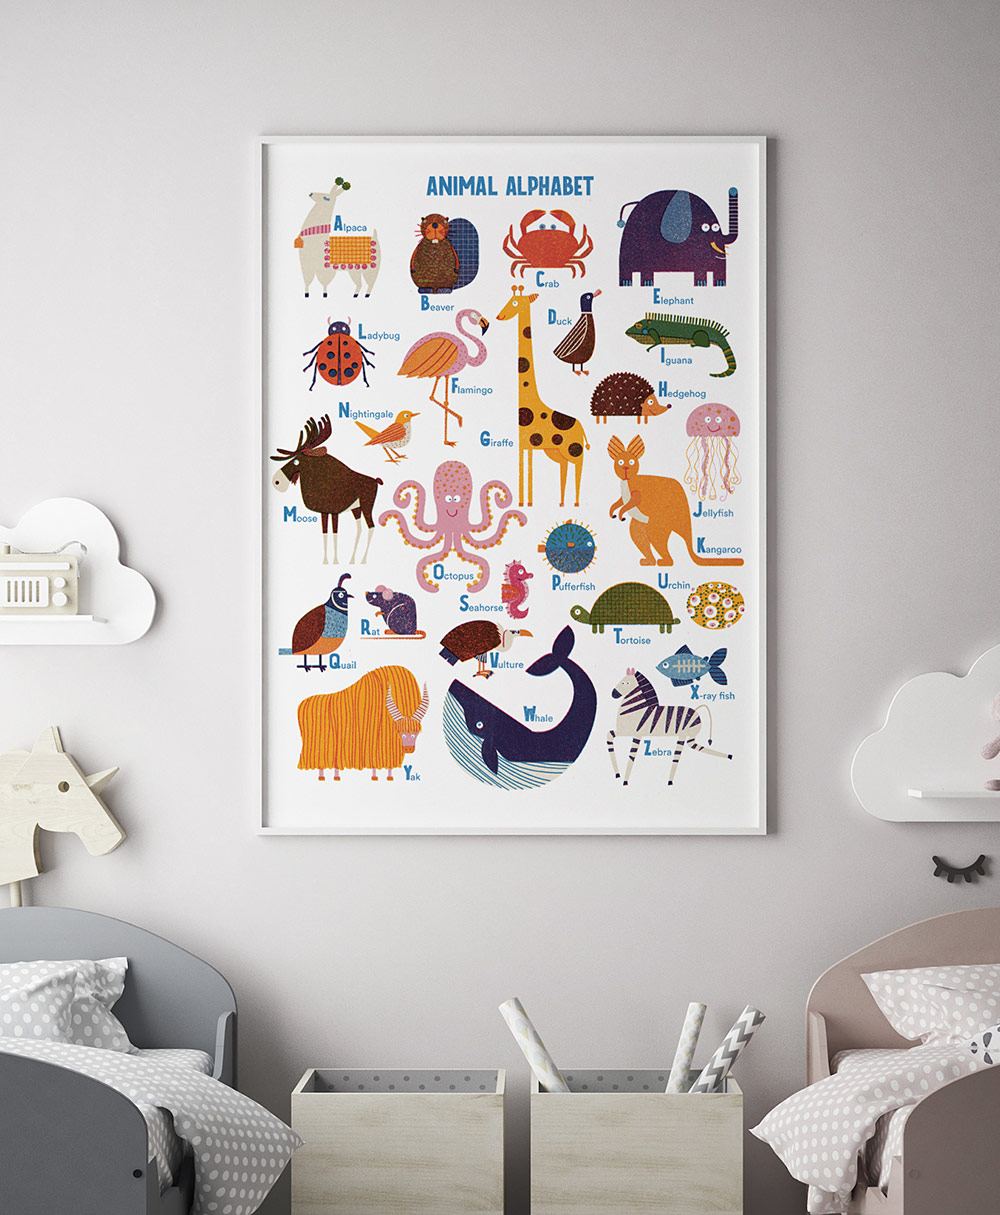 Animal Alphabet by Barbara Dziadosz Poster (50 x 70 cm)